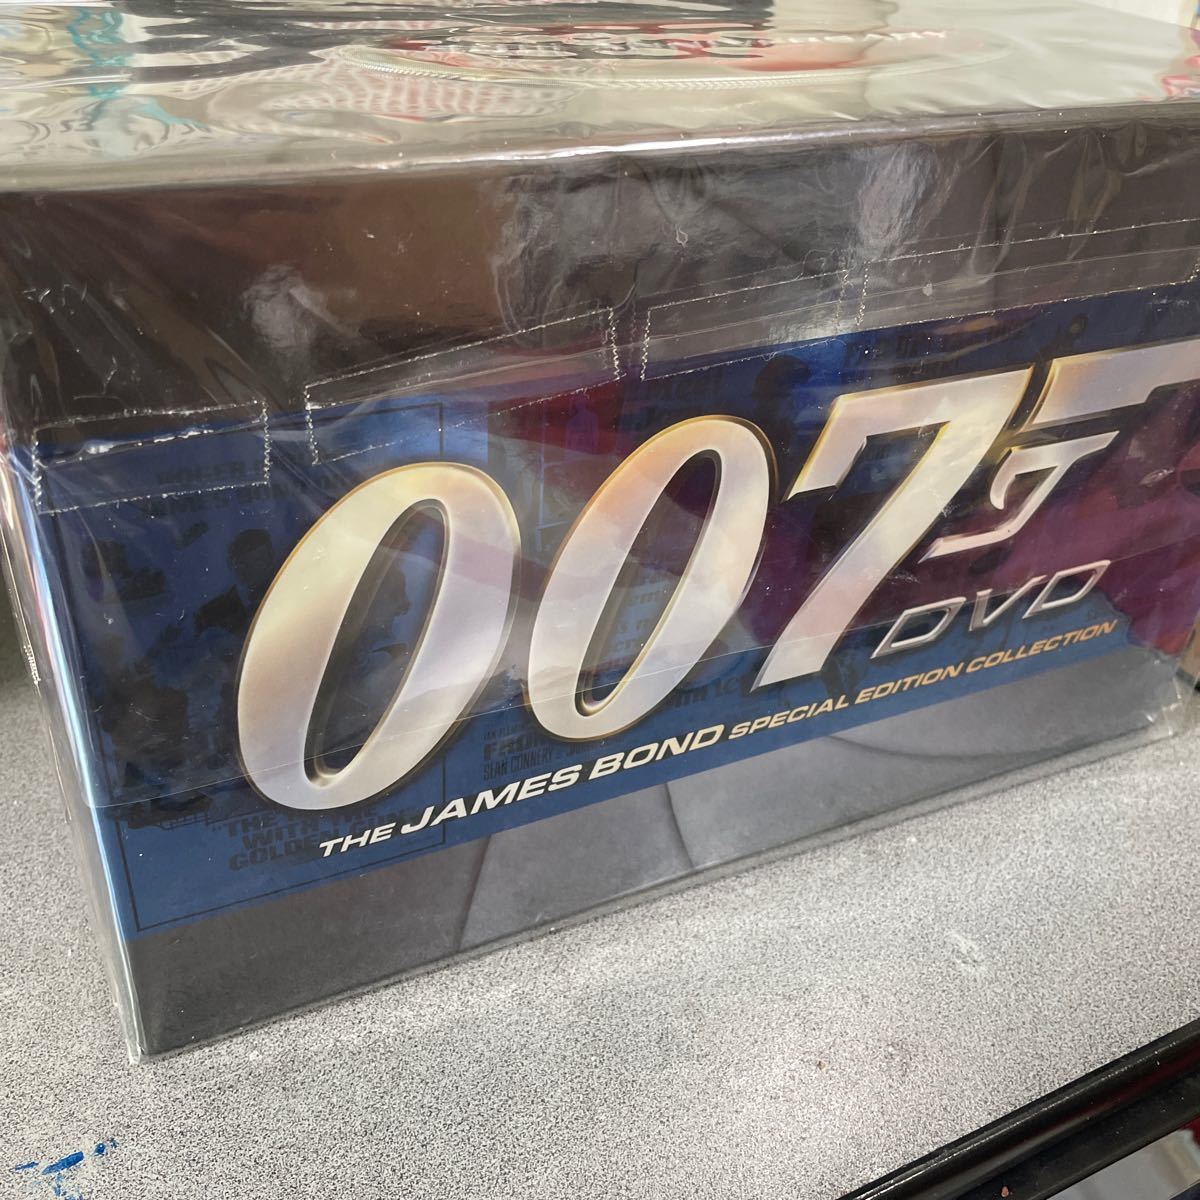 007シリーズ製作40周年記念DVD-BOX    値下げ